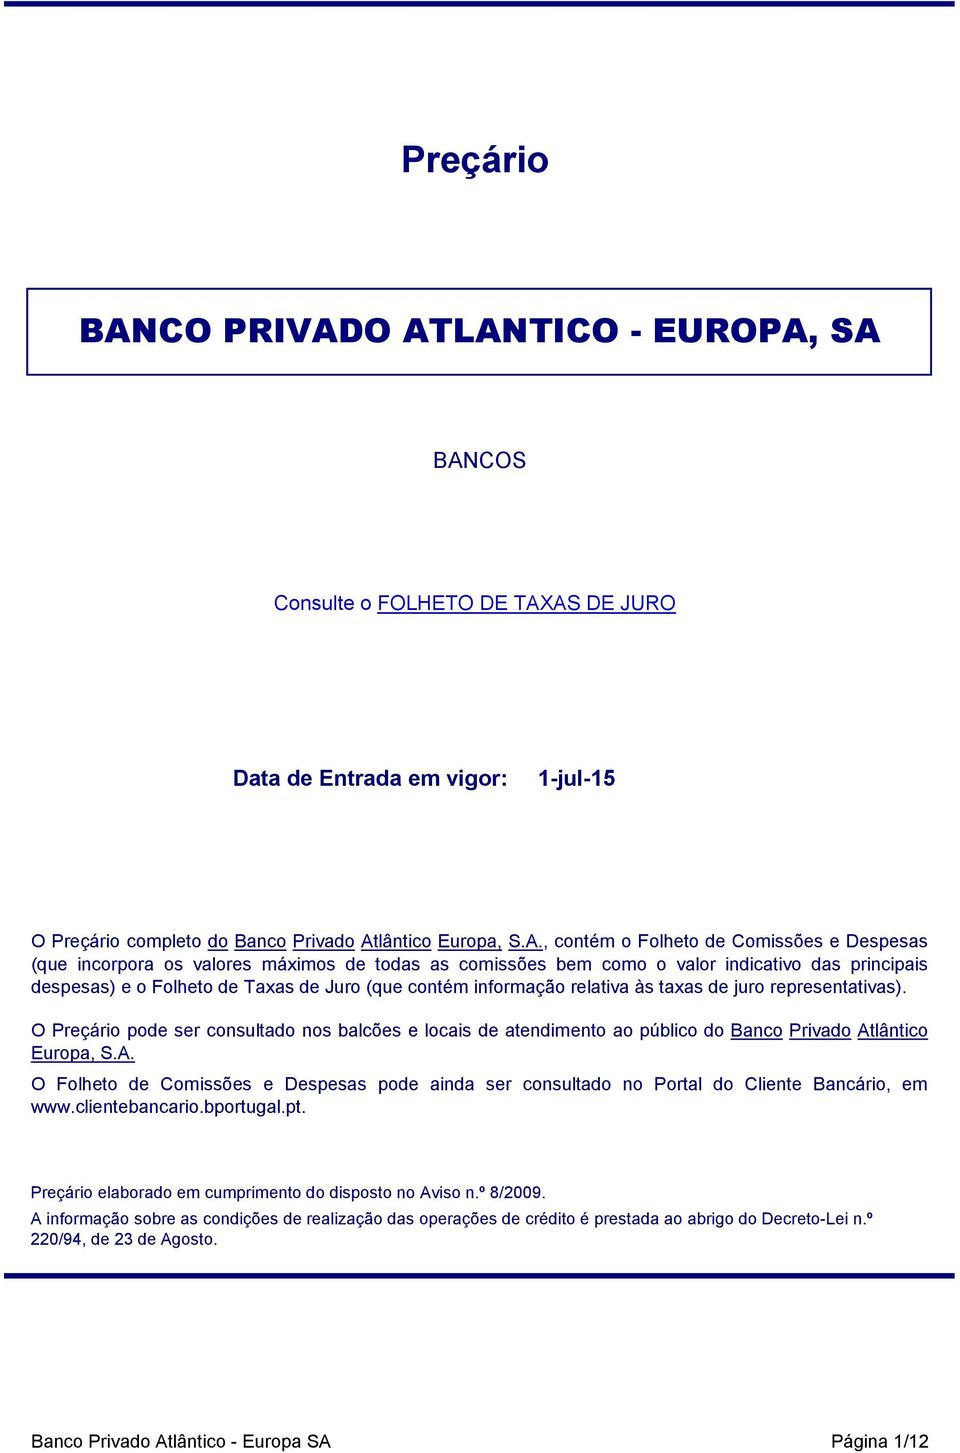 O ATLANTICO - EUROPA, SA BANCOS Consulte o FOLHETO DE TAXAS DE JURO Data de Entrada em vigor: 1-jul-15 O Preçário completo do Banco Privado Atlântico Europa, S.A., contém o Folheto de Comissões e